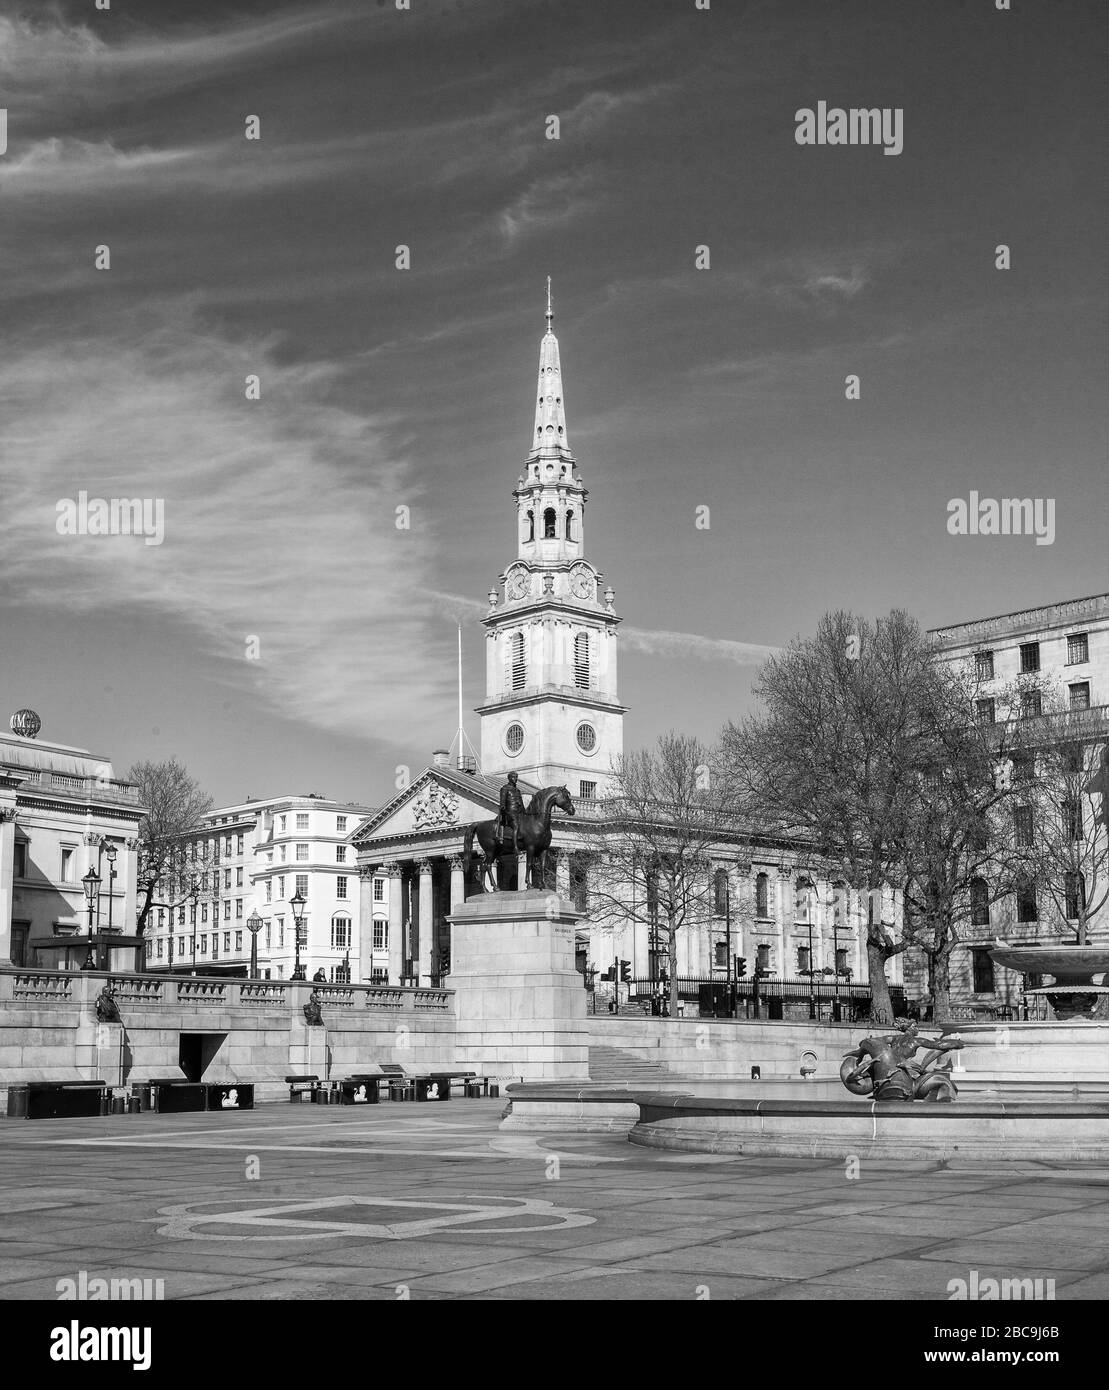 Un Trafalgar Square déserté en raison de l'épidémie de coronavirus, City of Westminster, Londres, Royaume-Uni avril 2020 Banque D'Images